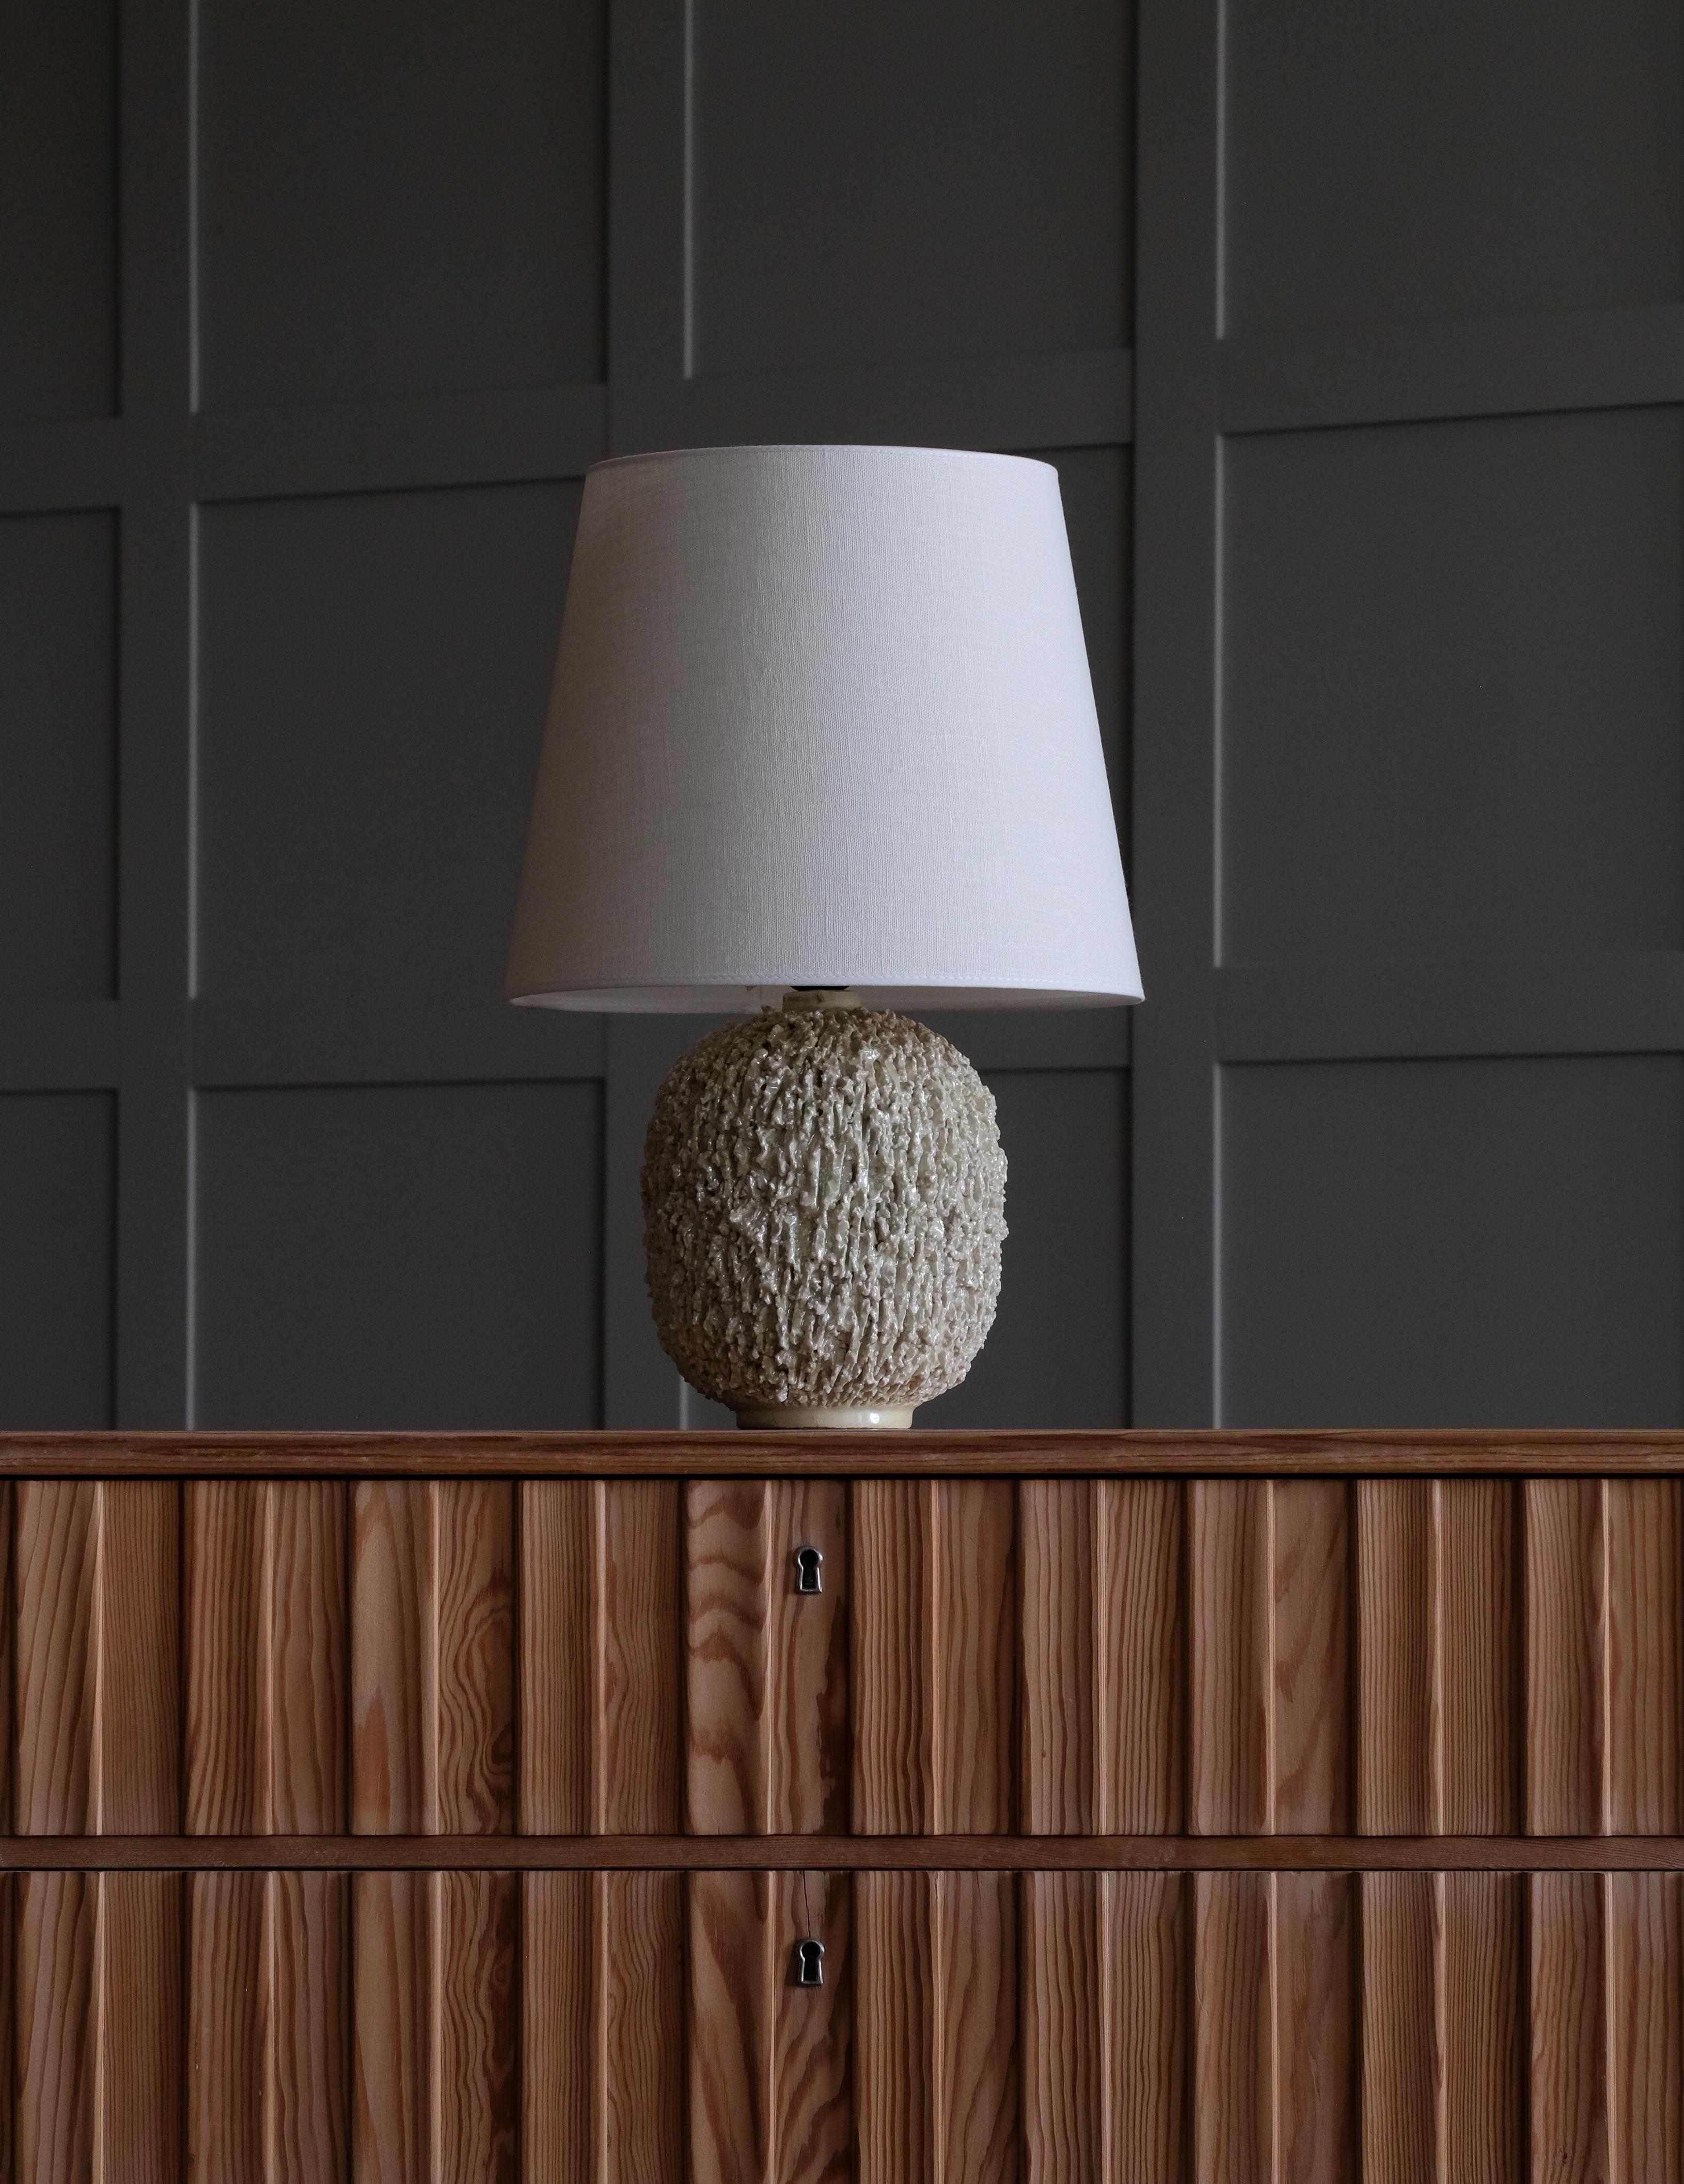 Lampe en céramique de forme bulbeuse par Gunnar Nylund, composée d'argile chamottée et émaillée d'une glaçure lustrée de couleur blanche. Produit par Rörstrand. Estampillé. Lot de 2 disponibles.
Remarque : le prix indiqué est celui d'une (1) lampe